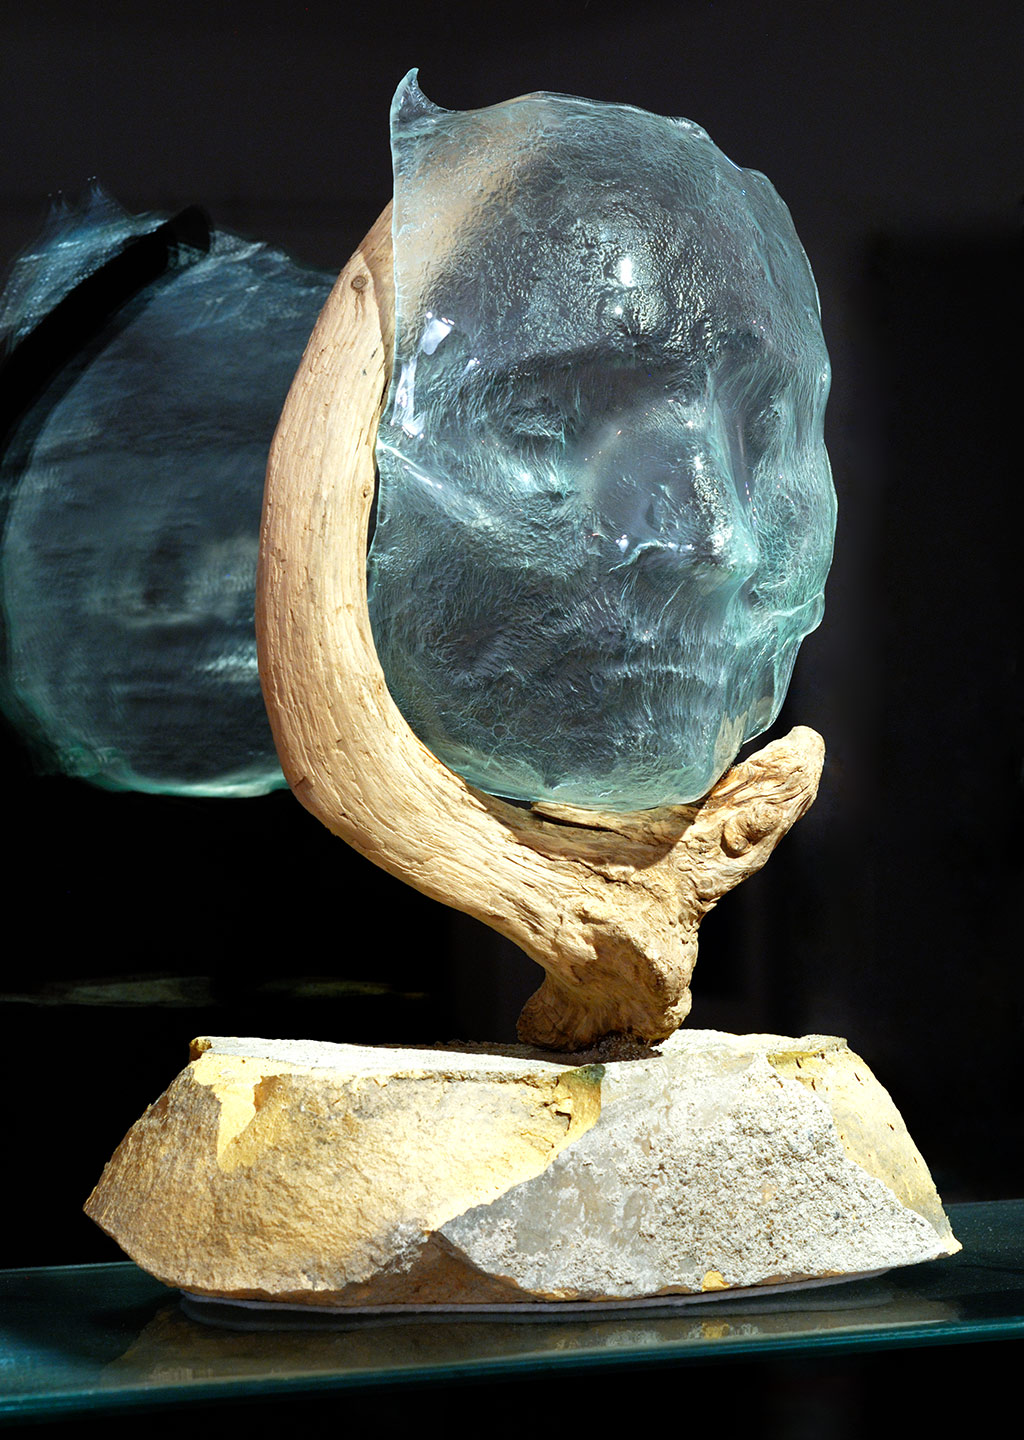 Skulptur mit ofengeformtem Glas, Schwemmholz und Ziegelstein.